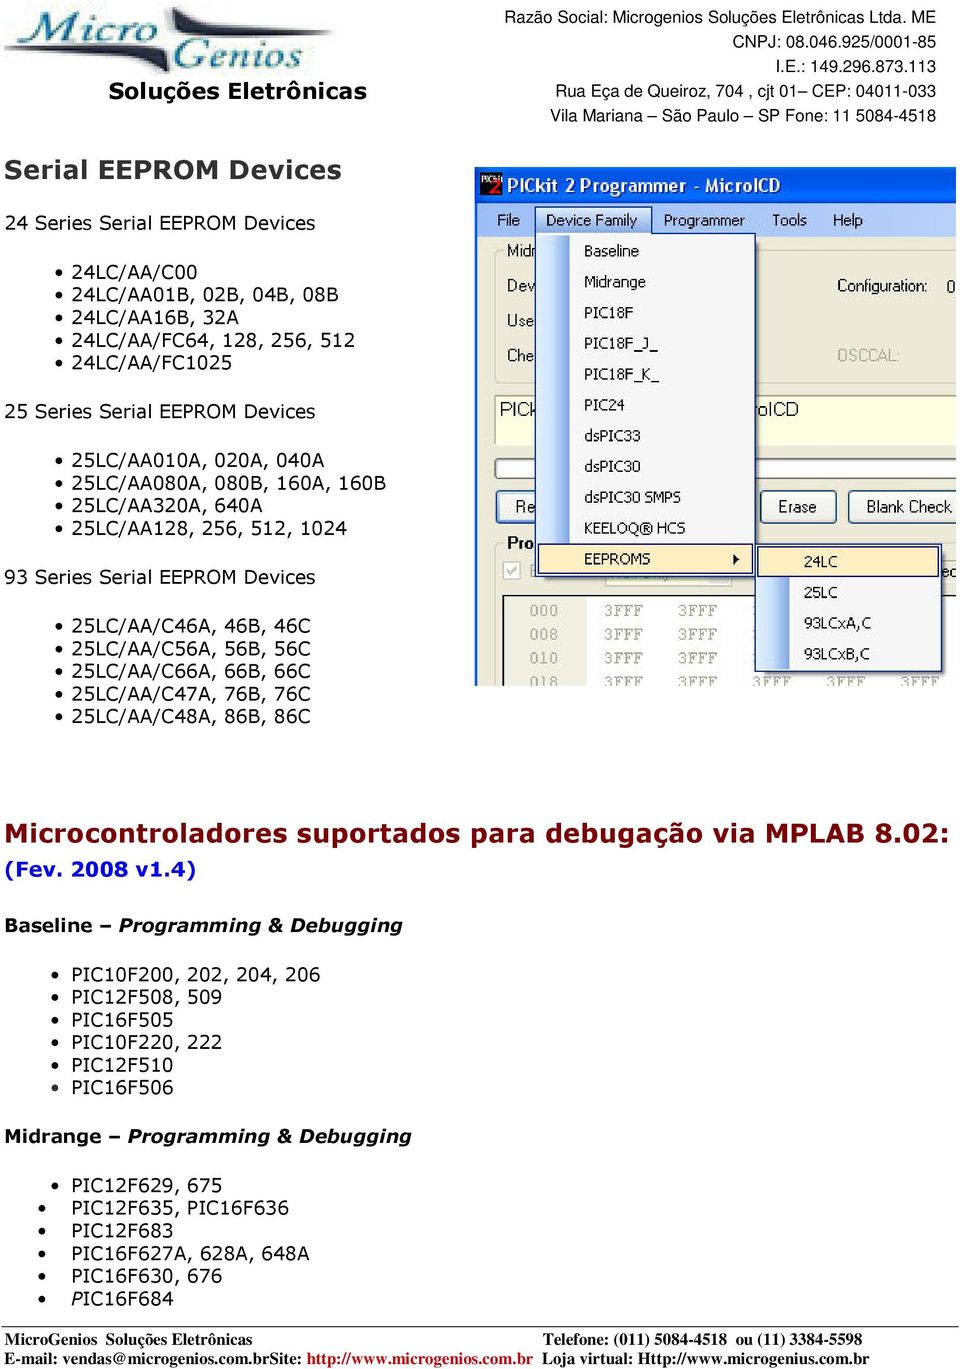 25LC/AA/C66A, 66B, 66C 25LC/AA/C47A, 76B, 76C 25LC/AA/C48A, 86B, 86C Microcontroladores suportados para debugação via MPLAB 8.02: (Fev. 2008 v1.